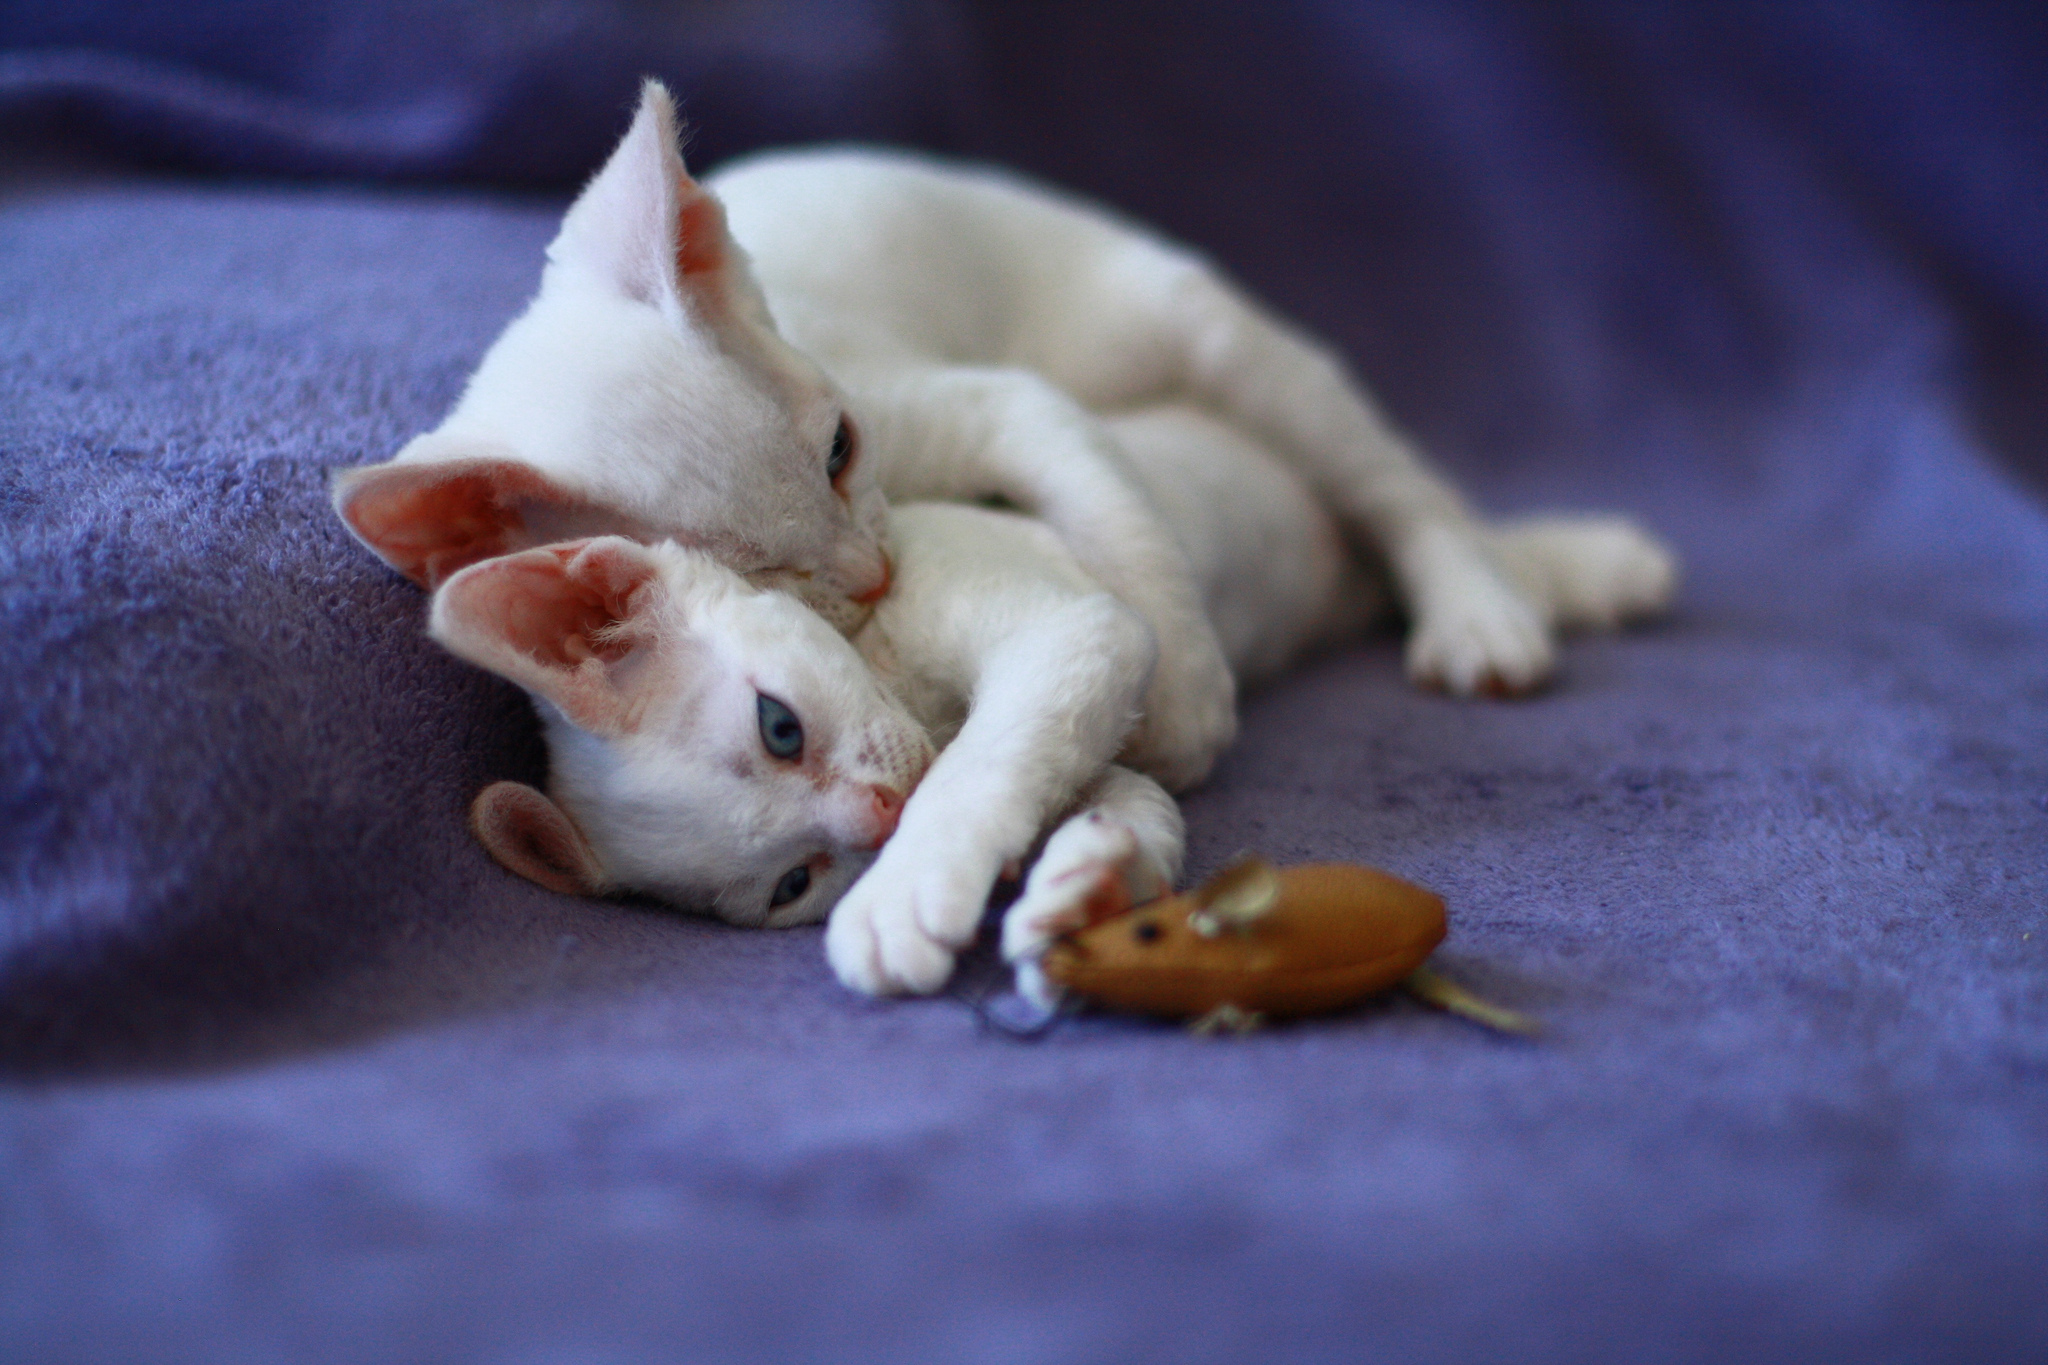 White Devon Rex kittens play